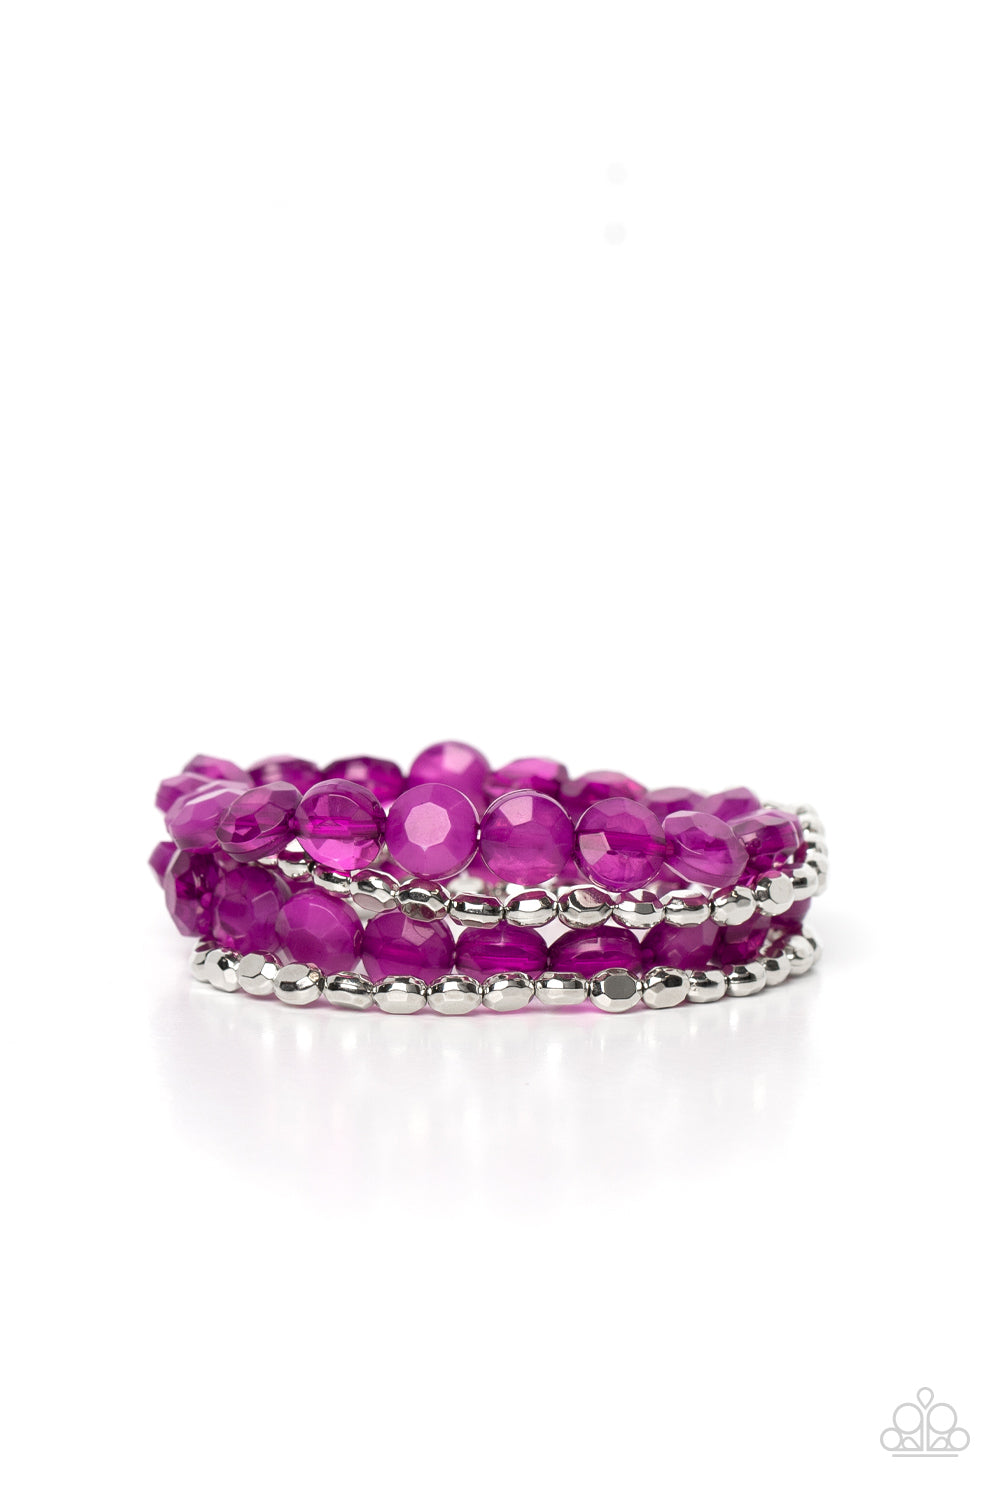 Seaside Siesta - purple - Paparazzi bracelet